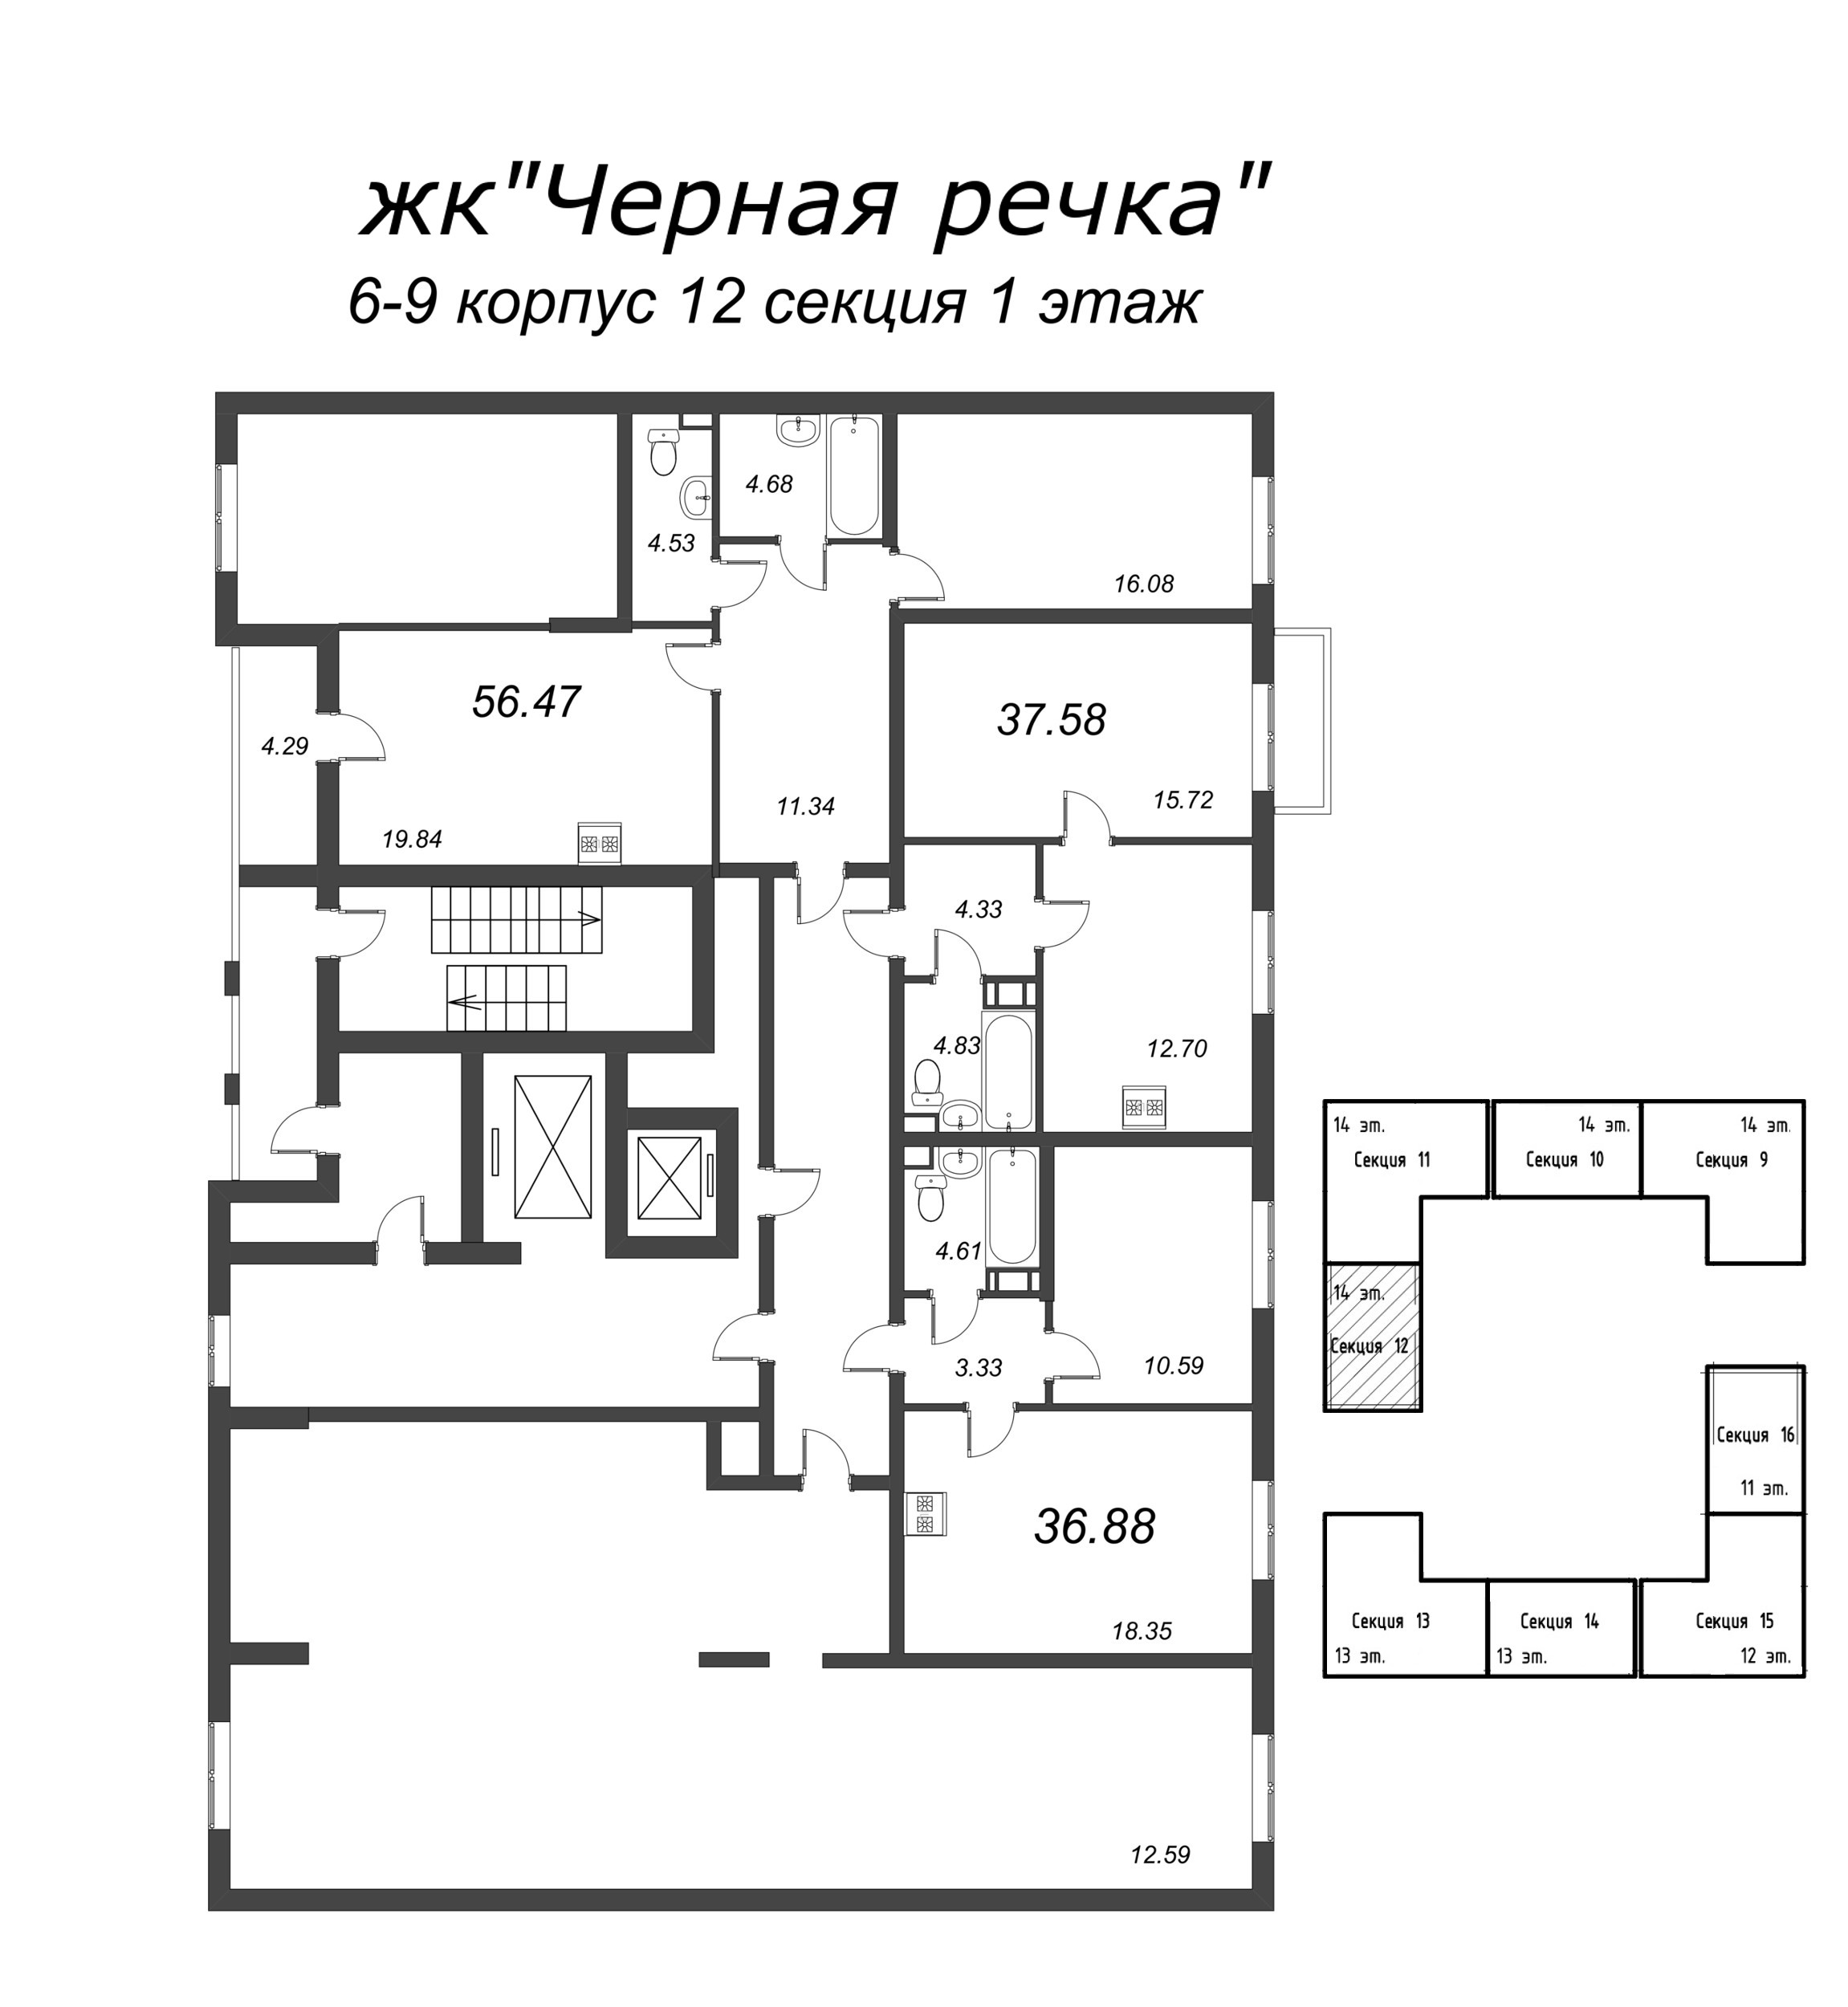 2-комнатная (Евро) квартира, 36.88 м² в ЖК "Чёрная речка" - планировка этажа